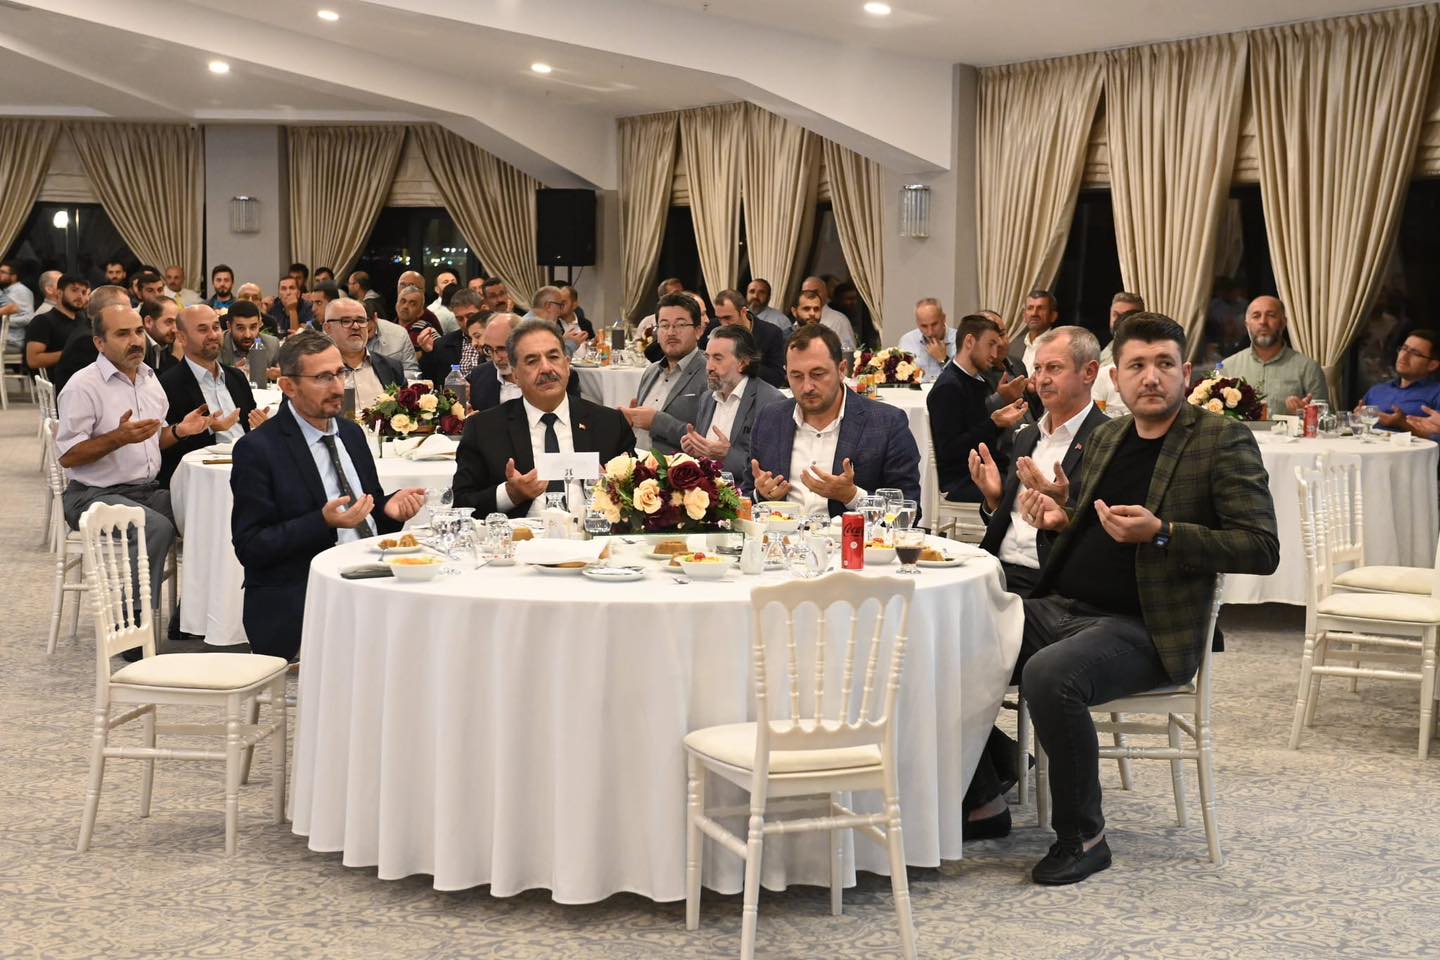 Başkan Yüksel din görevlileri ile akşam yemeğinde bir araya geldi